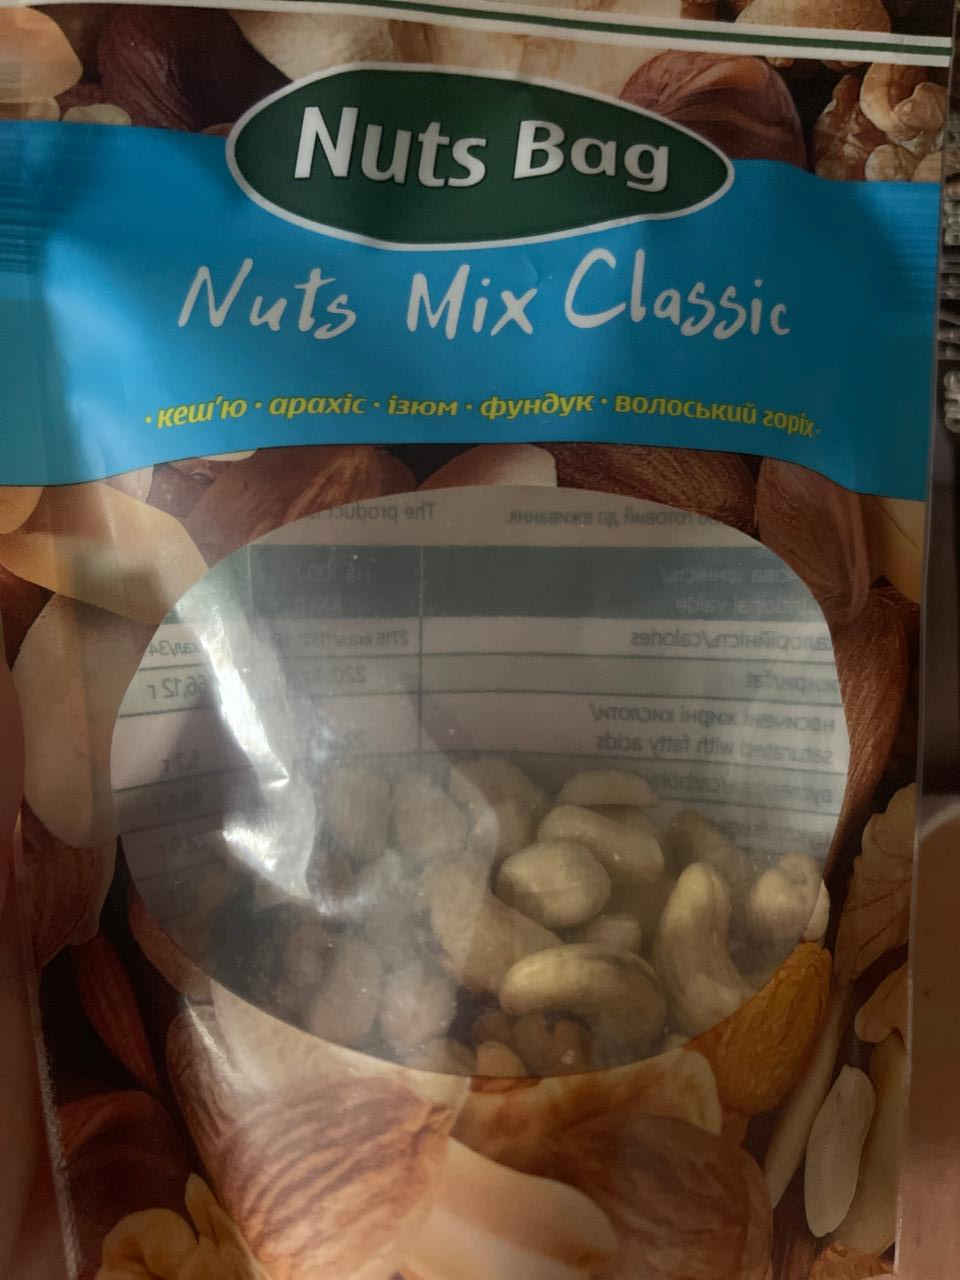 Фото - Nuts Mix Classic Nuts Bag